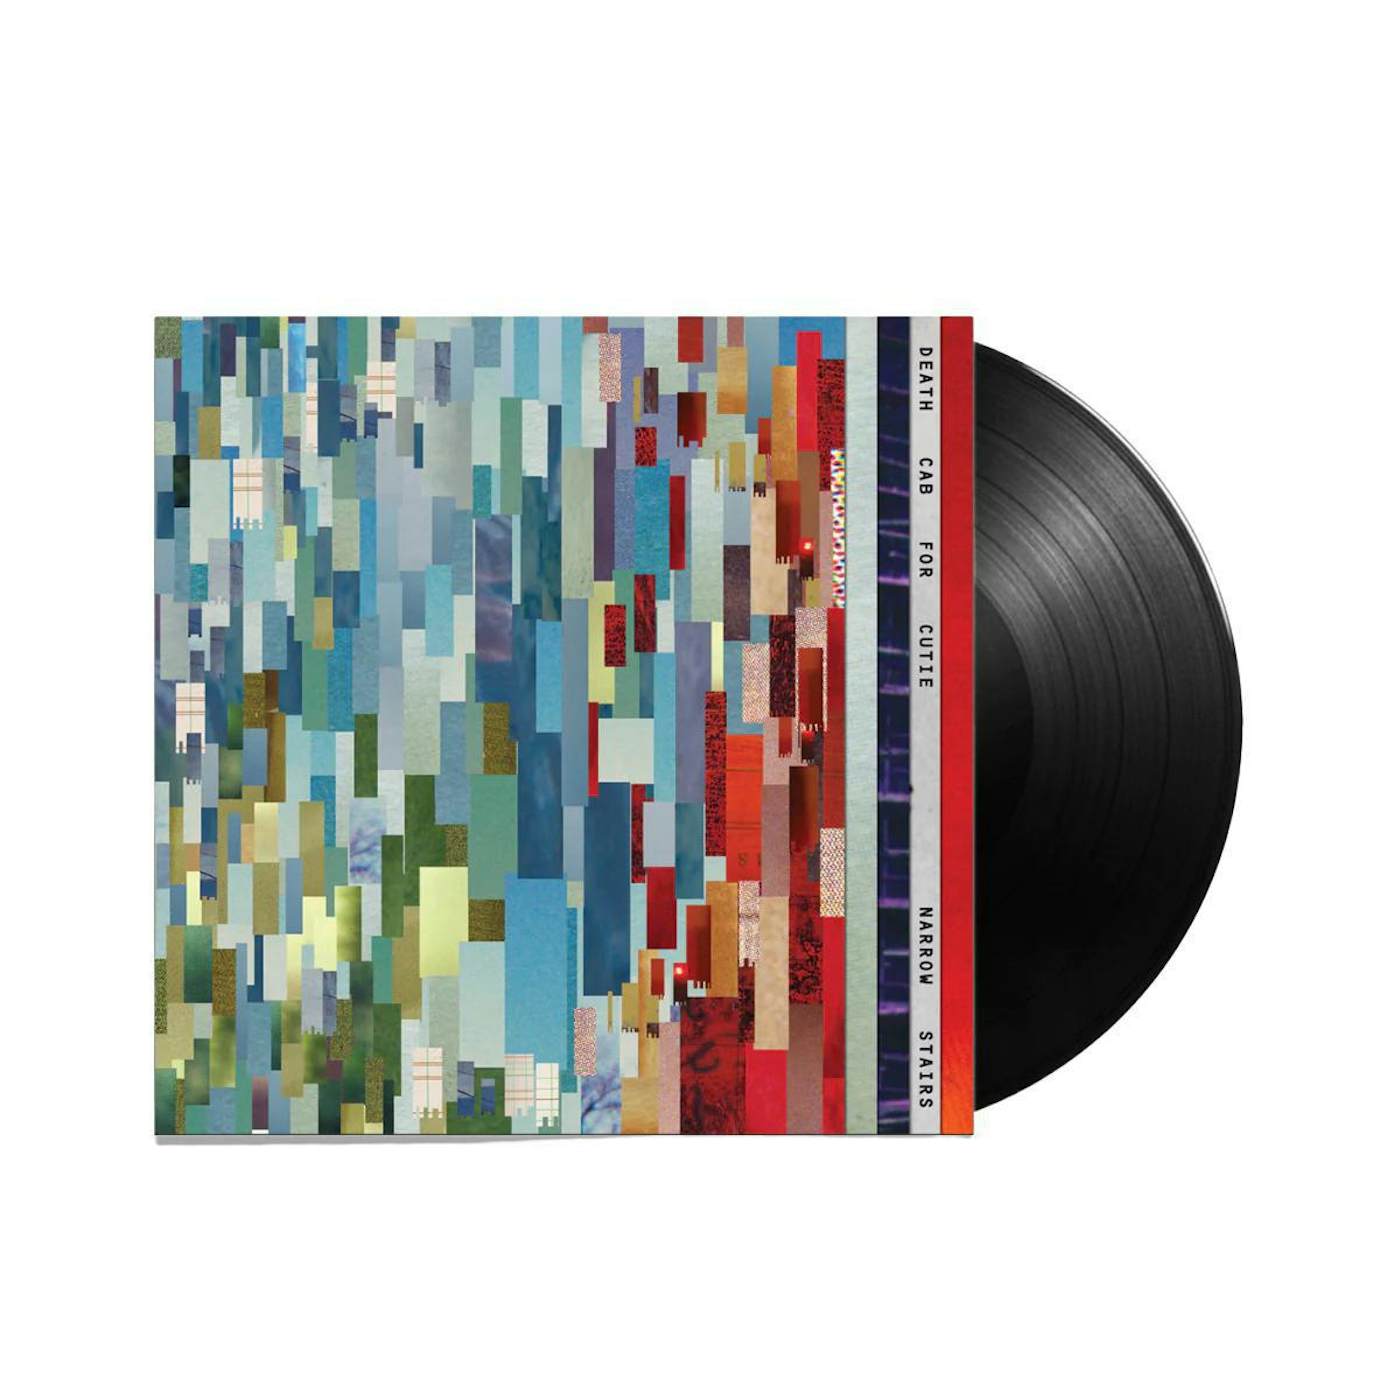 LP Vinyl Record Holder - narrow